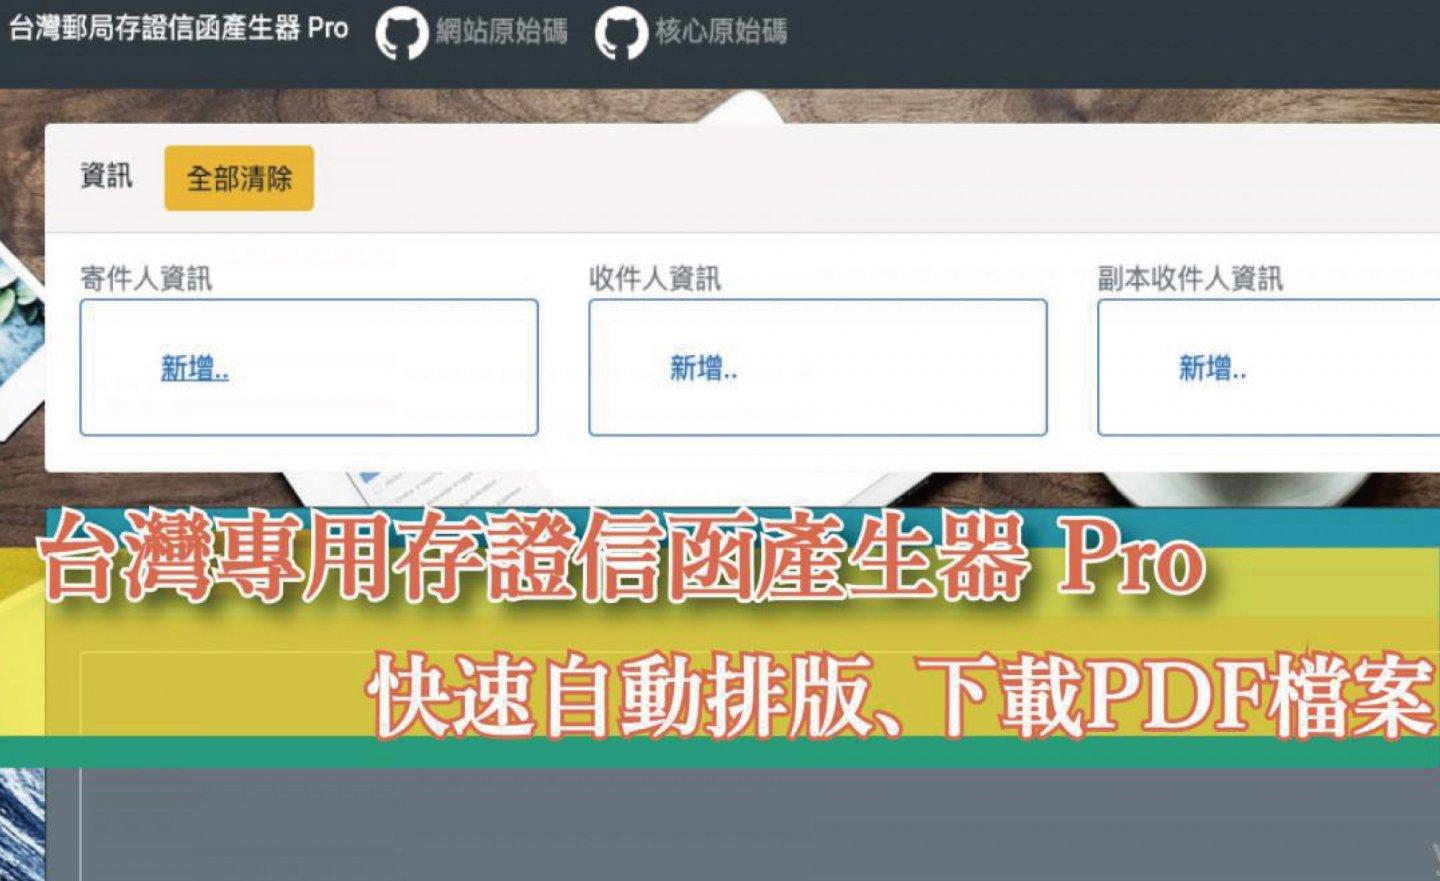 【免費】升級版「台灣專用存證信函產生器 Pro 」，自動排版、下載 PDF 檔案（2022.12.12 更新）